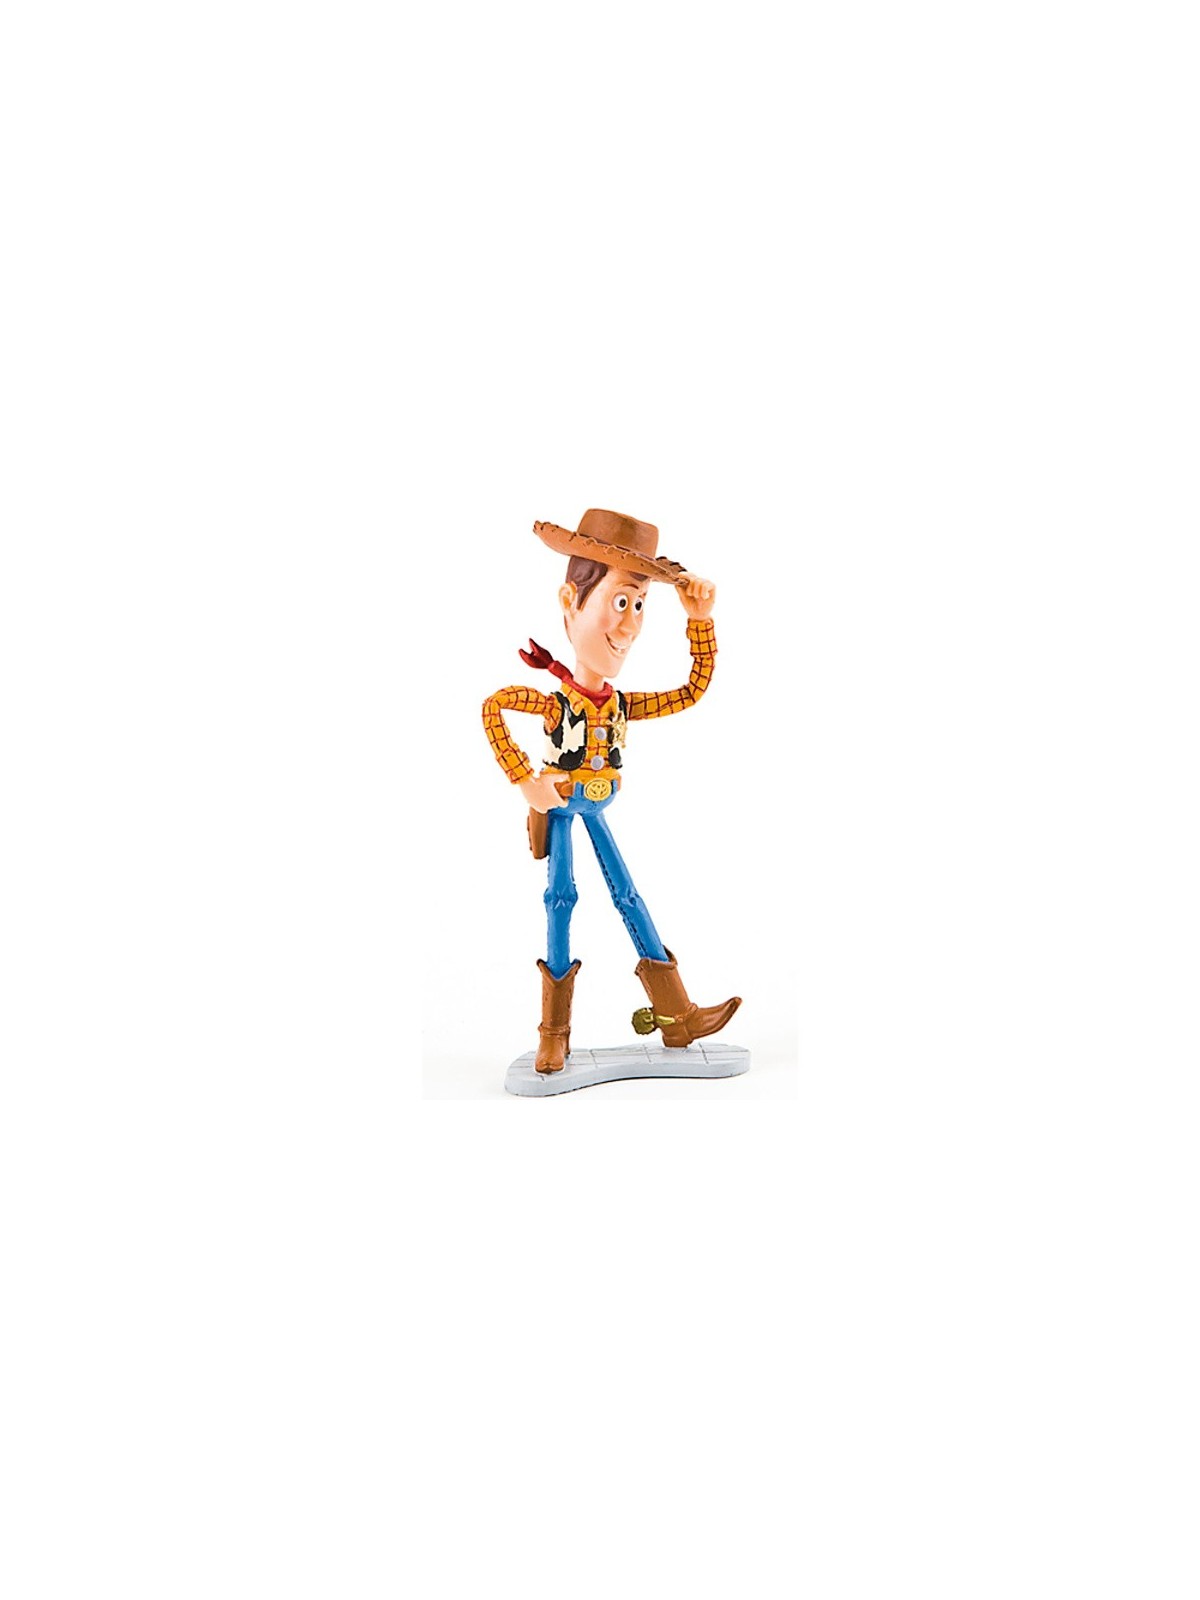 Dekorační figurka - Disney Figure Příběh hraček - Woody